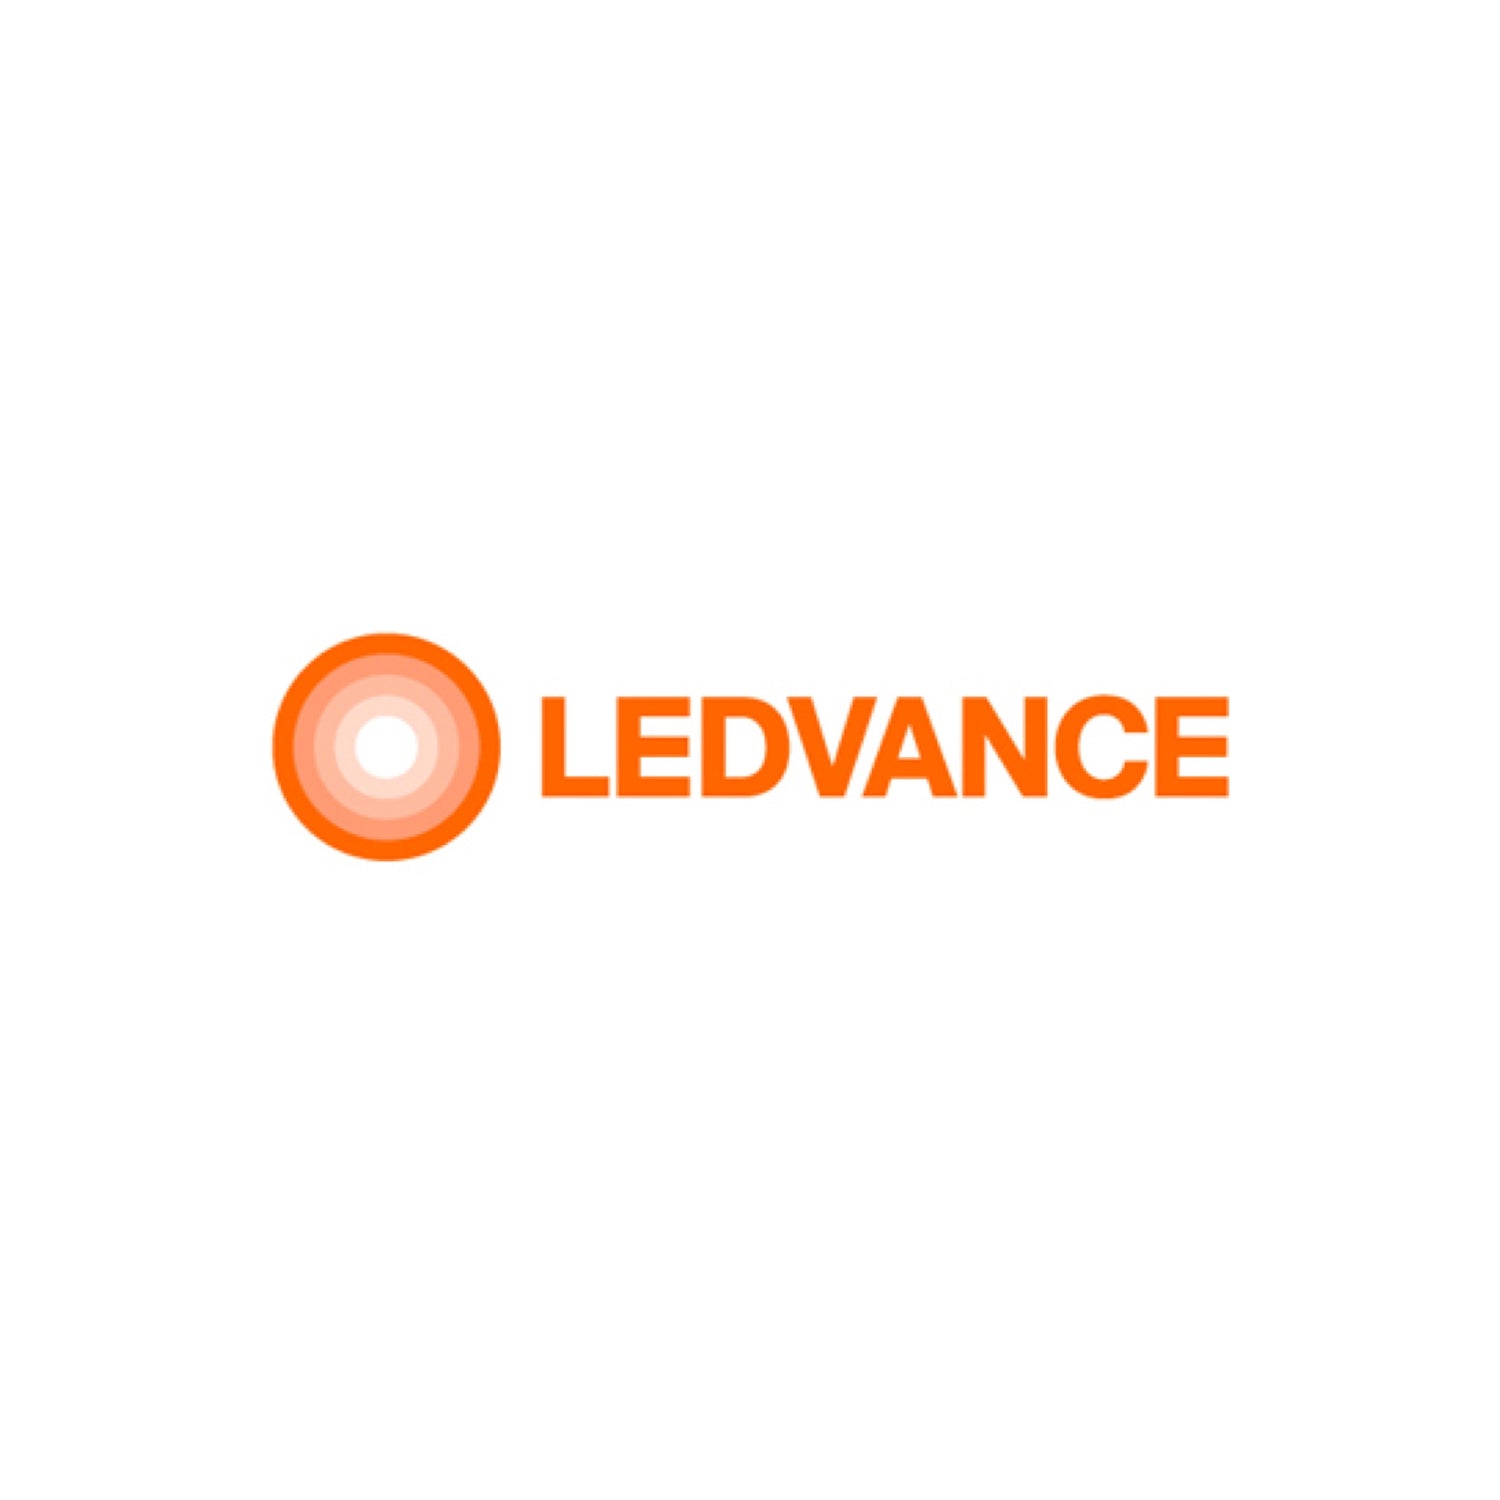 LEDVANCE LLC